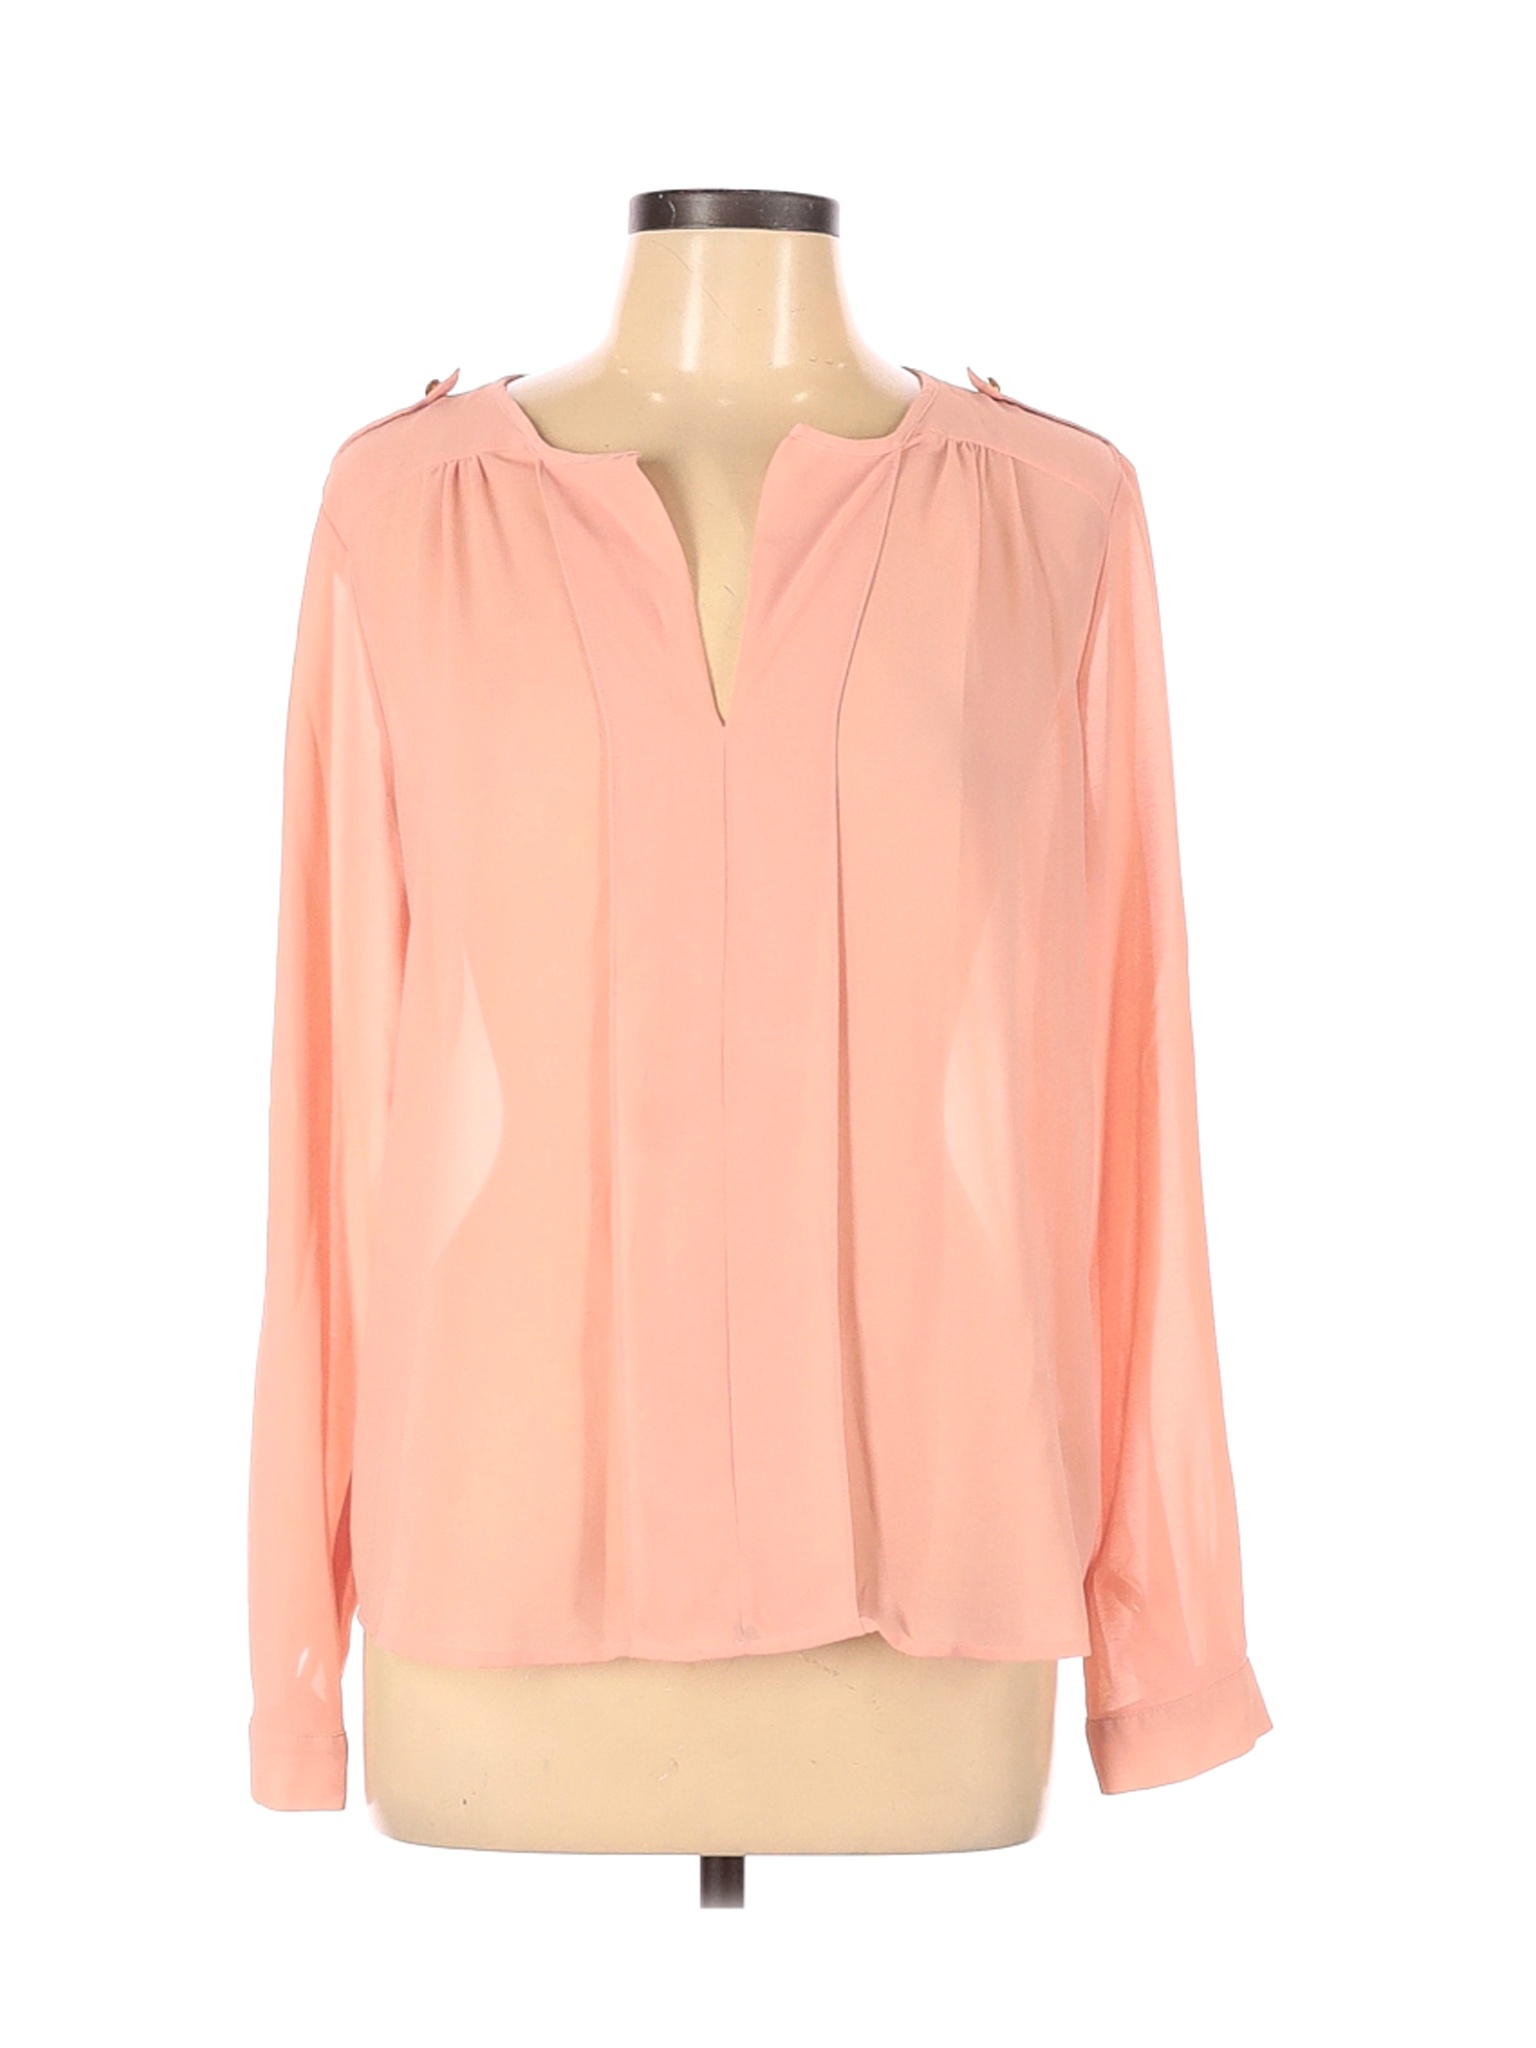 Forever 21 Women Pink Long Sleeve Blouse L | eBay